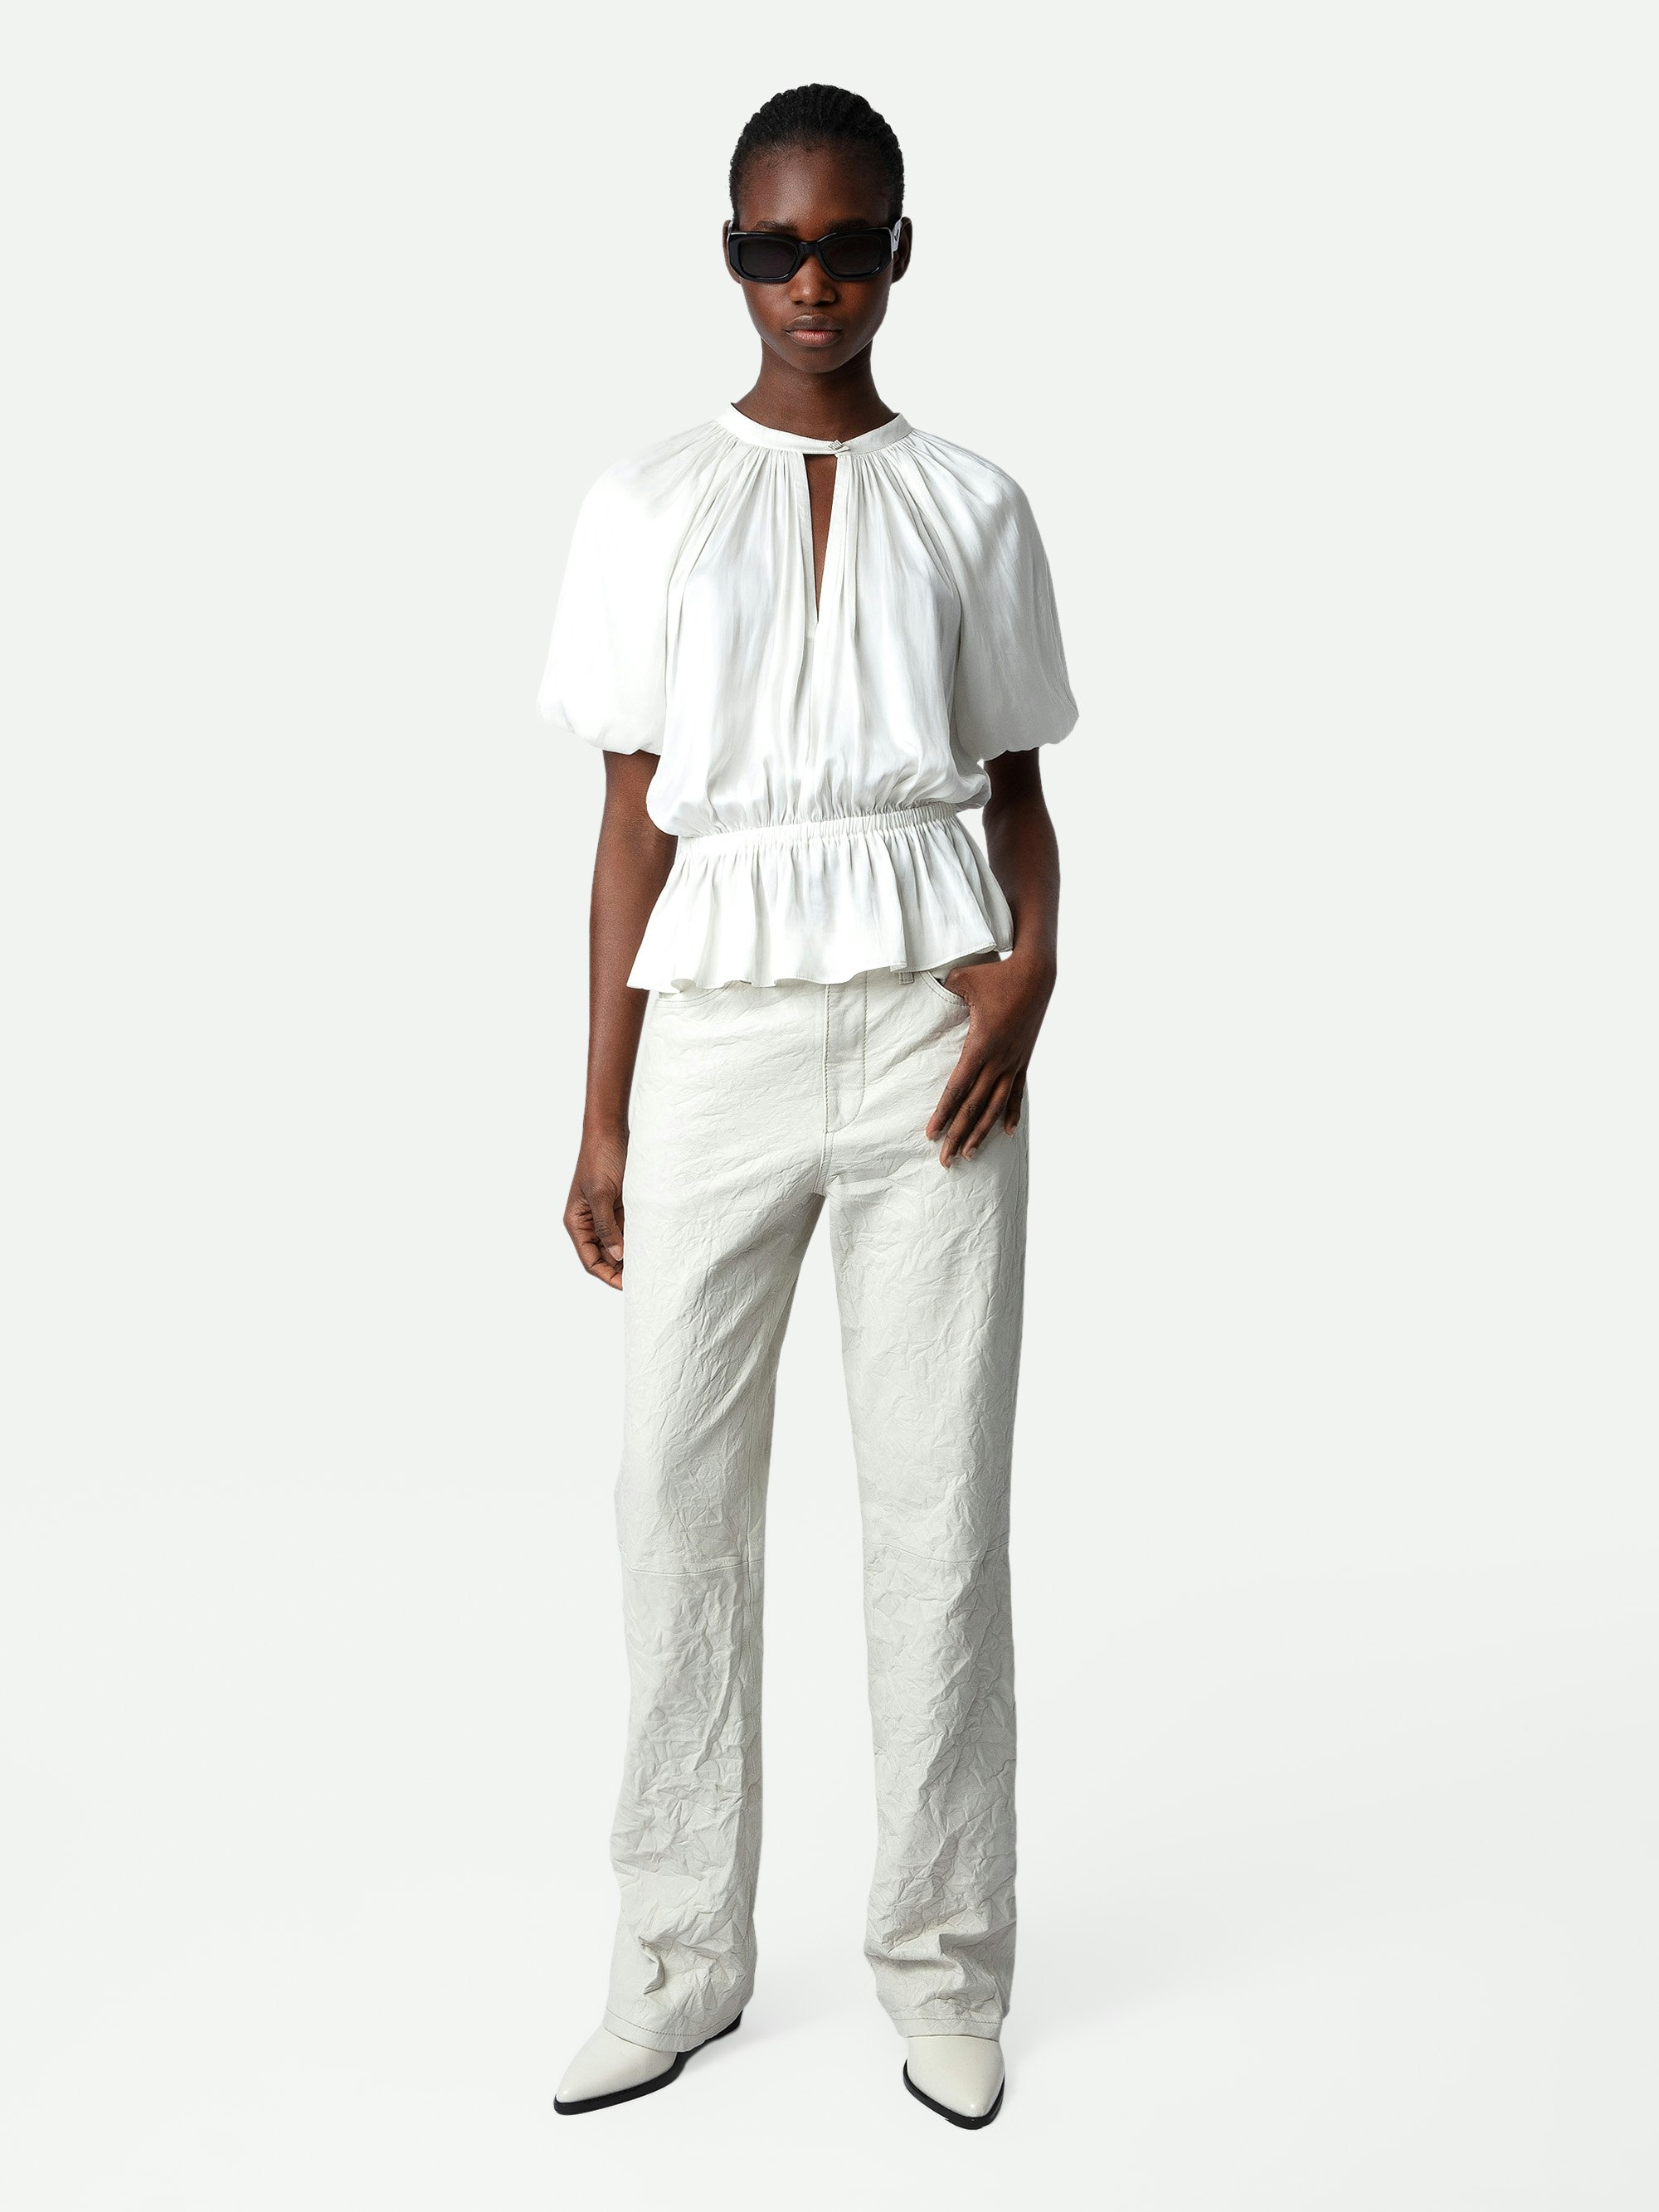 Tomina Satin Blouse - Women's white satin blouse.